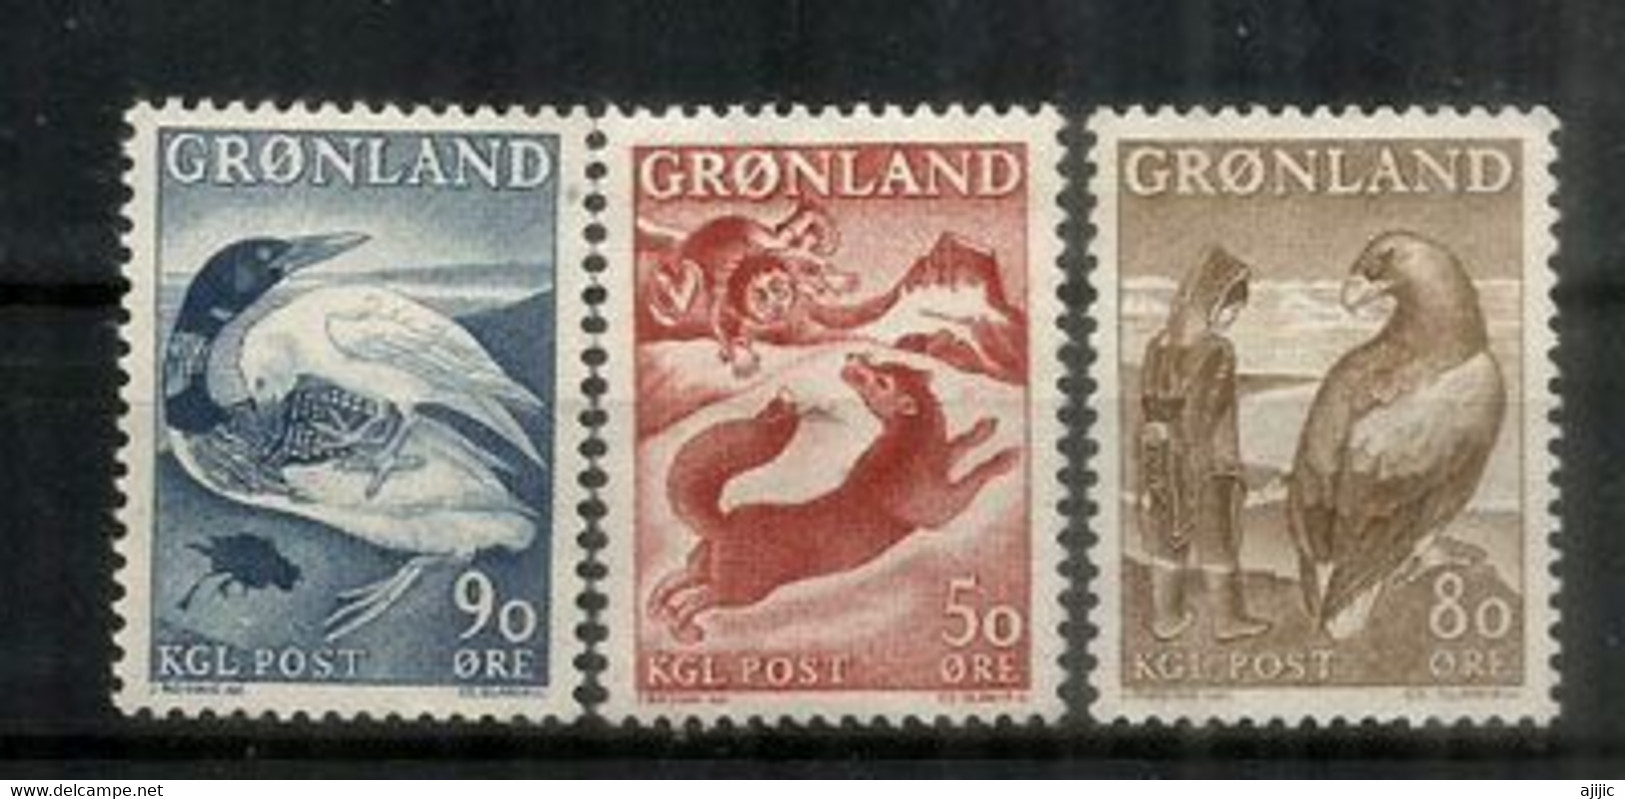 Faune Du Groenland: Renard Arctique,le Plongeon Arctique & L'Aigle Royal. 3 Timbres Neufs ** Du Groenland , Année 1966 - Arctic Wildlife